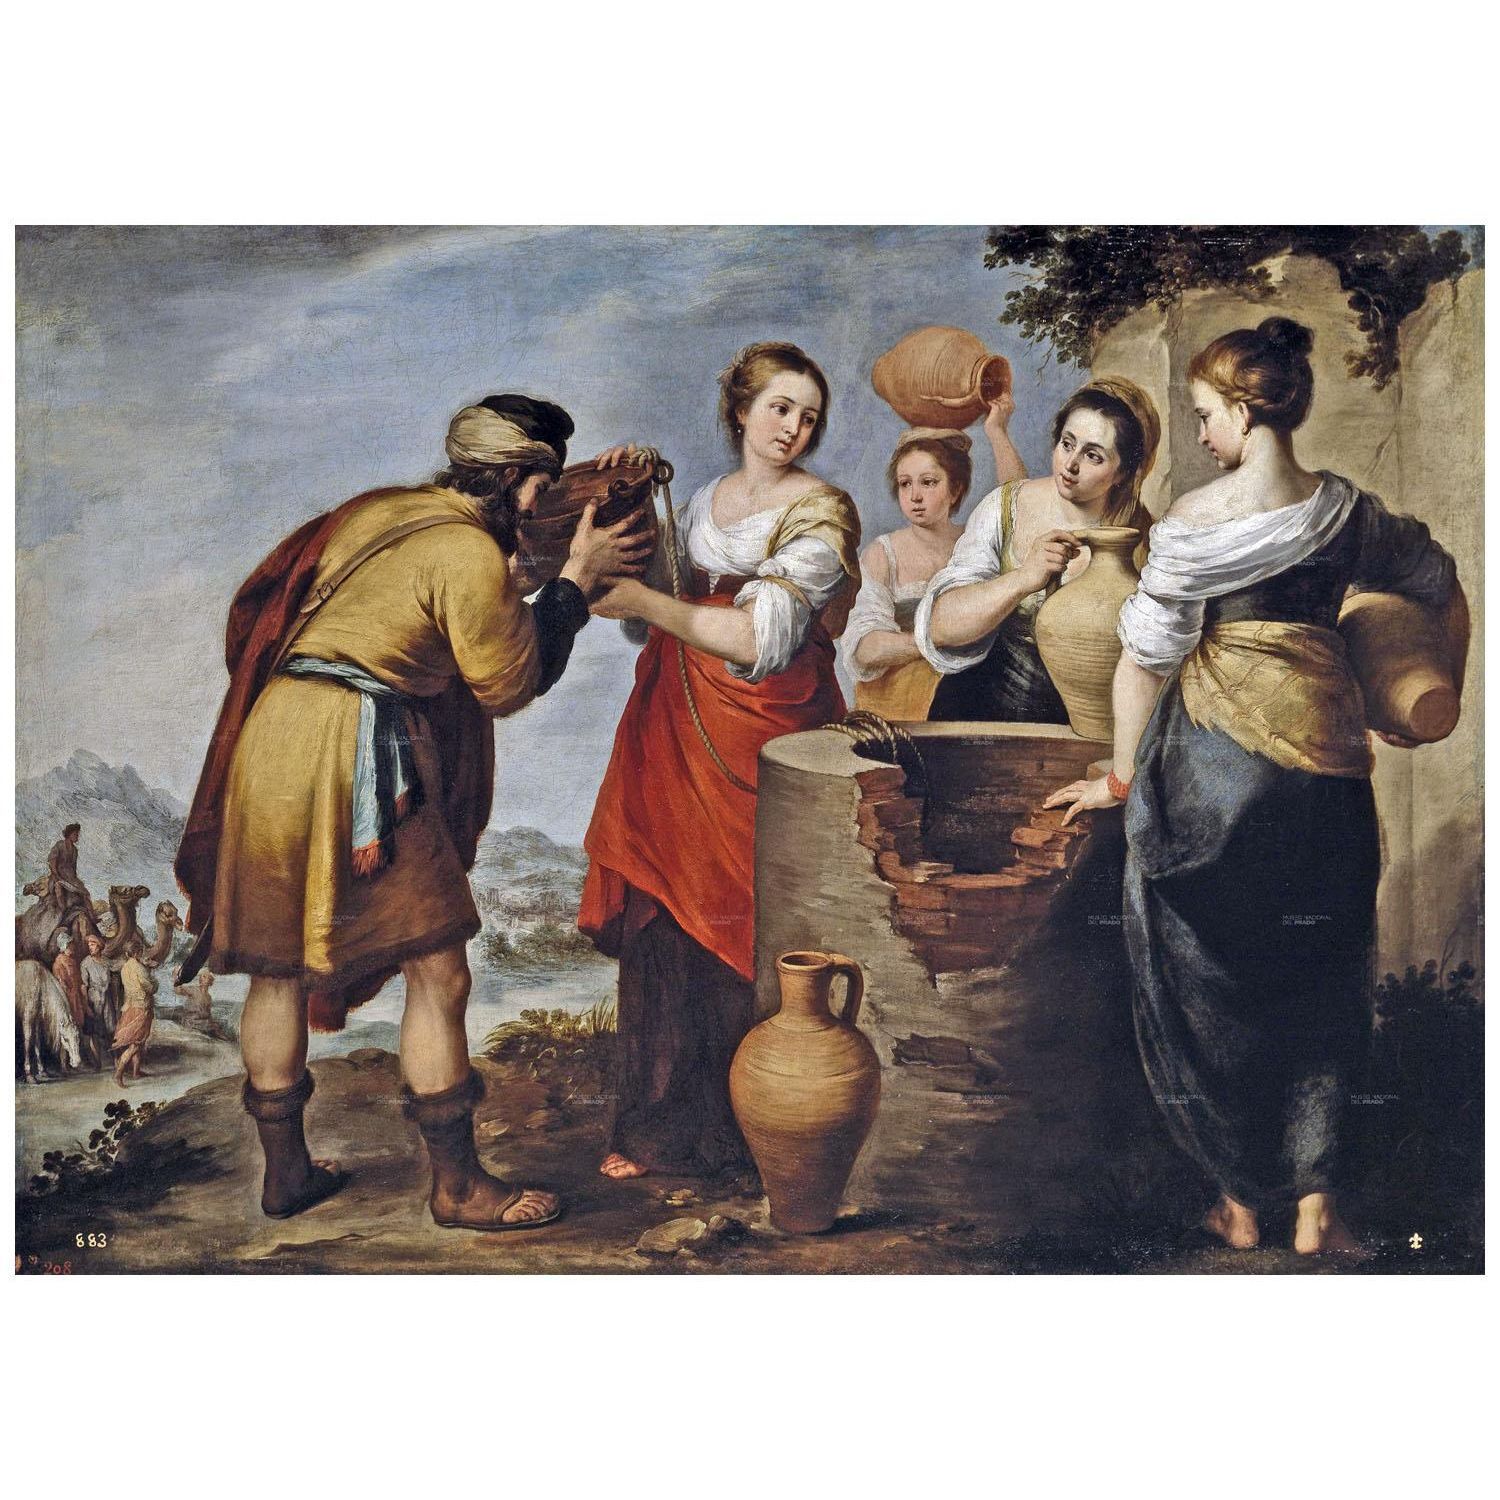 Bartolome Esteban Murillo. Rebeca y Eliezer. 1660. Museo del Prado